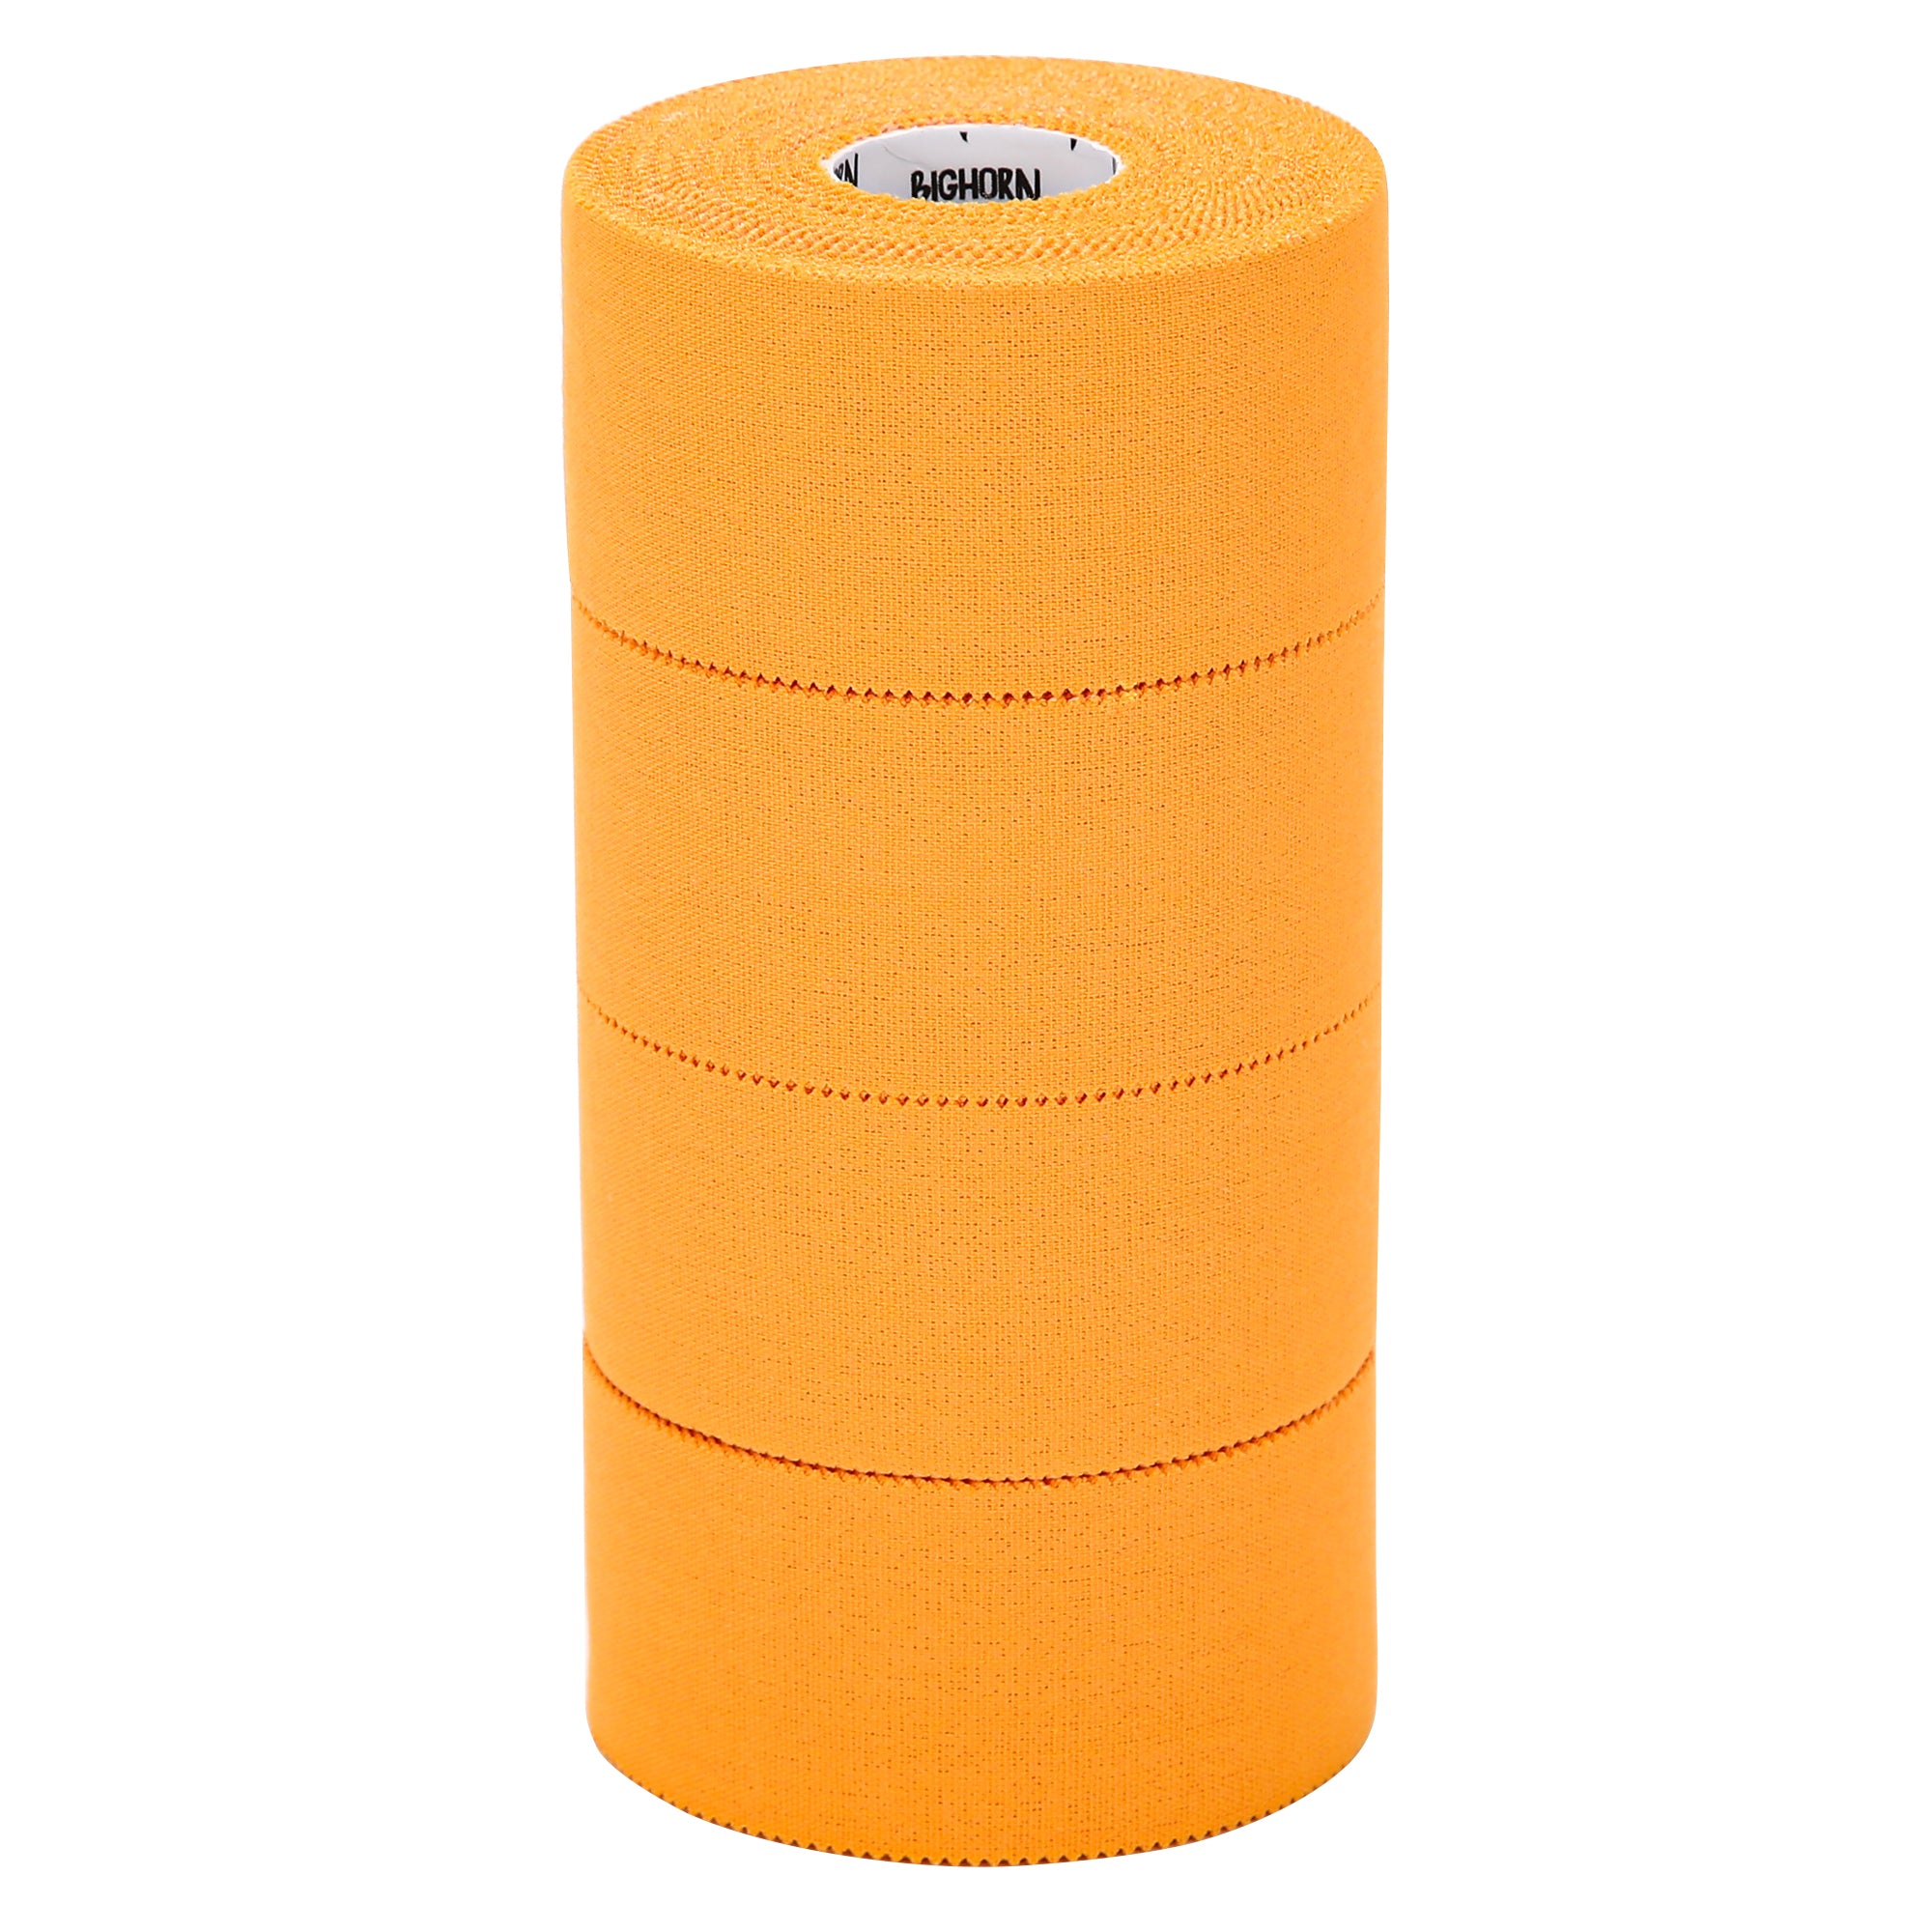 EZ-Tear Athletic Sports Tape, 1.5-Inch x 45-feet, 4-Rolls (Orange)